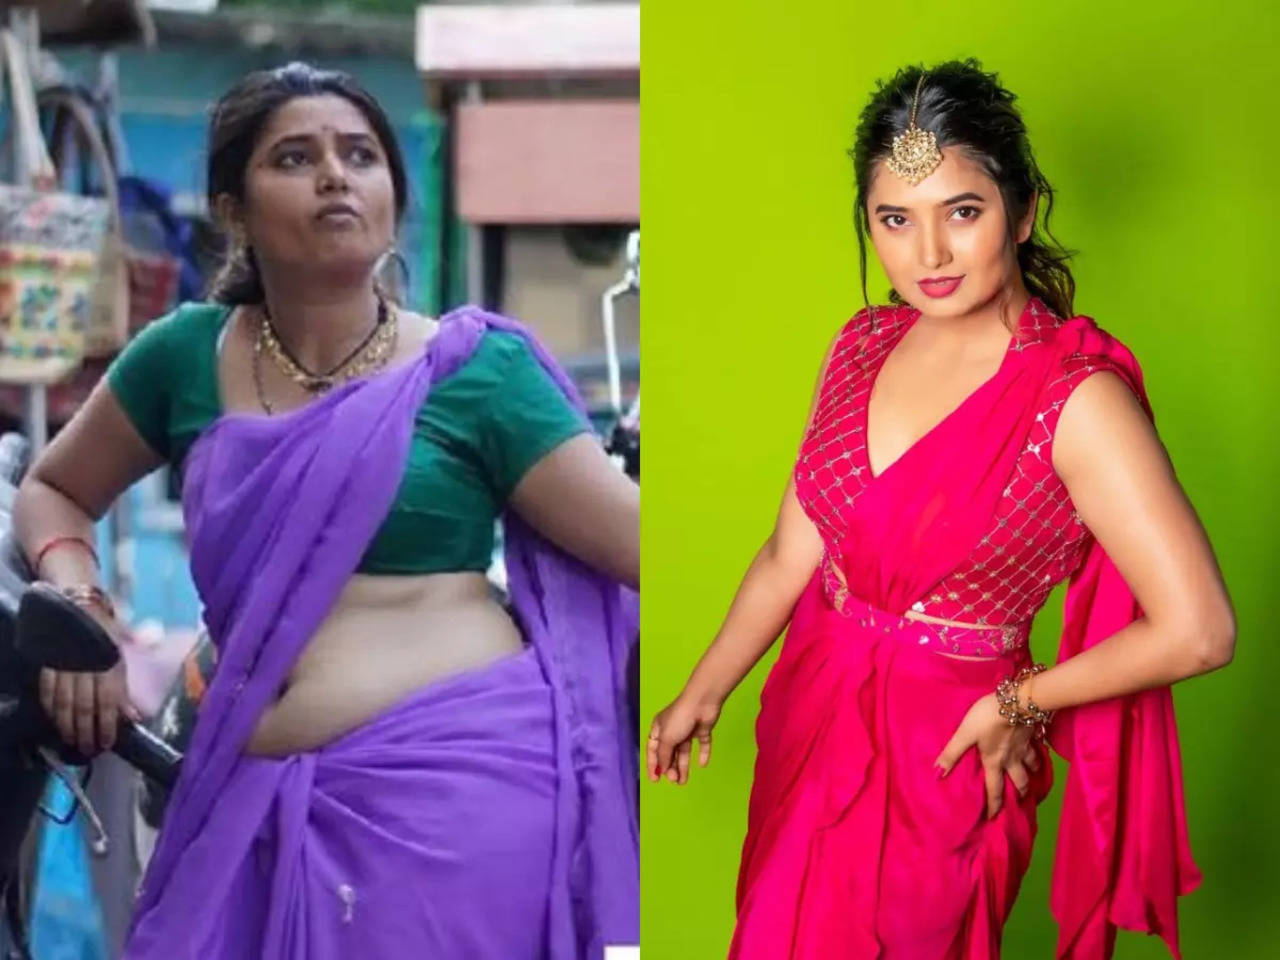 Prajakta Mali reveals she gained 7kgs to play sex worker in RaanBaazaar